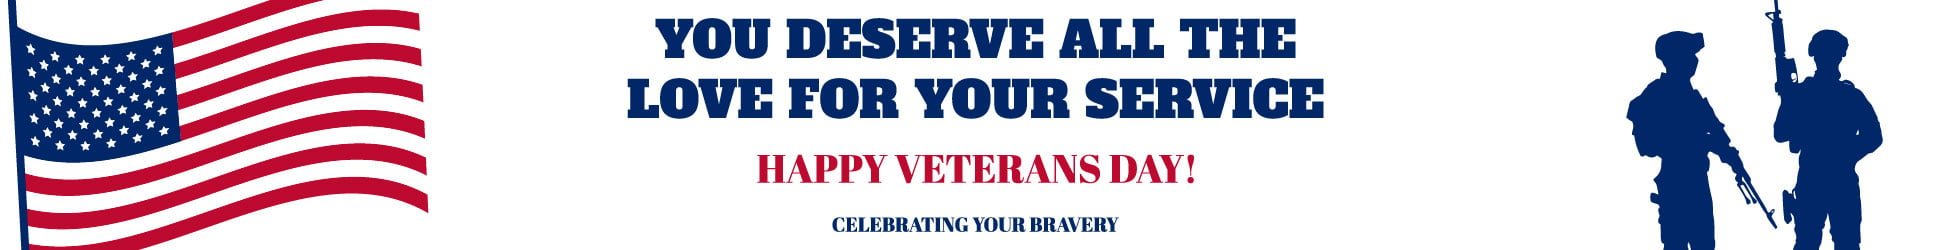 Free Veterans Day Website Banner in Illustrator, PSD, EPS, SVG, JPG, PNG